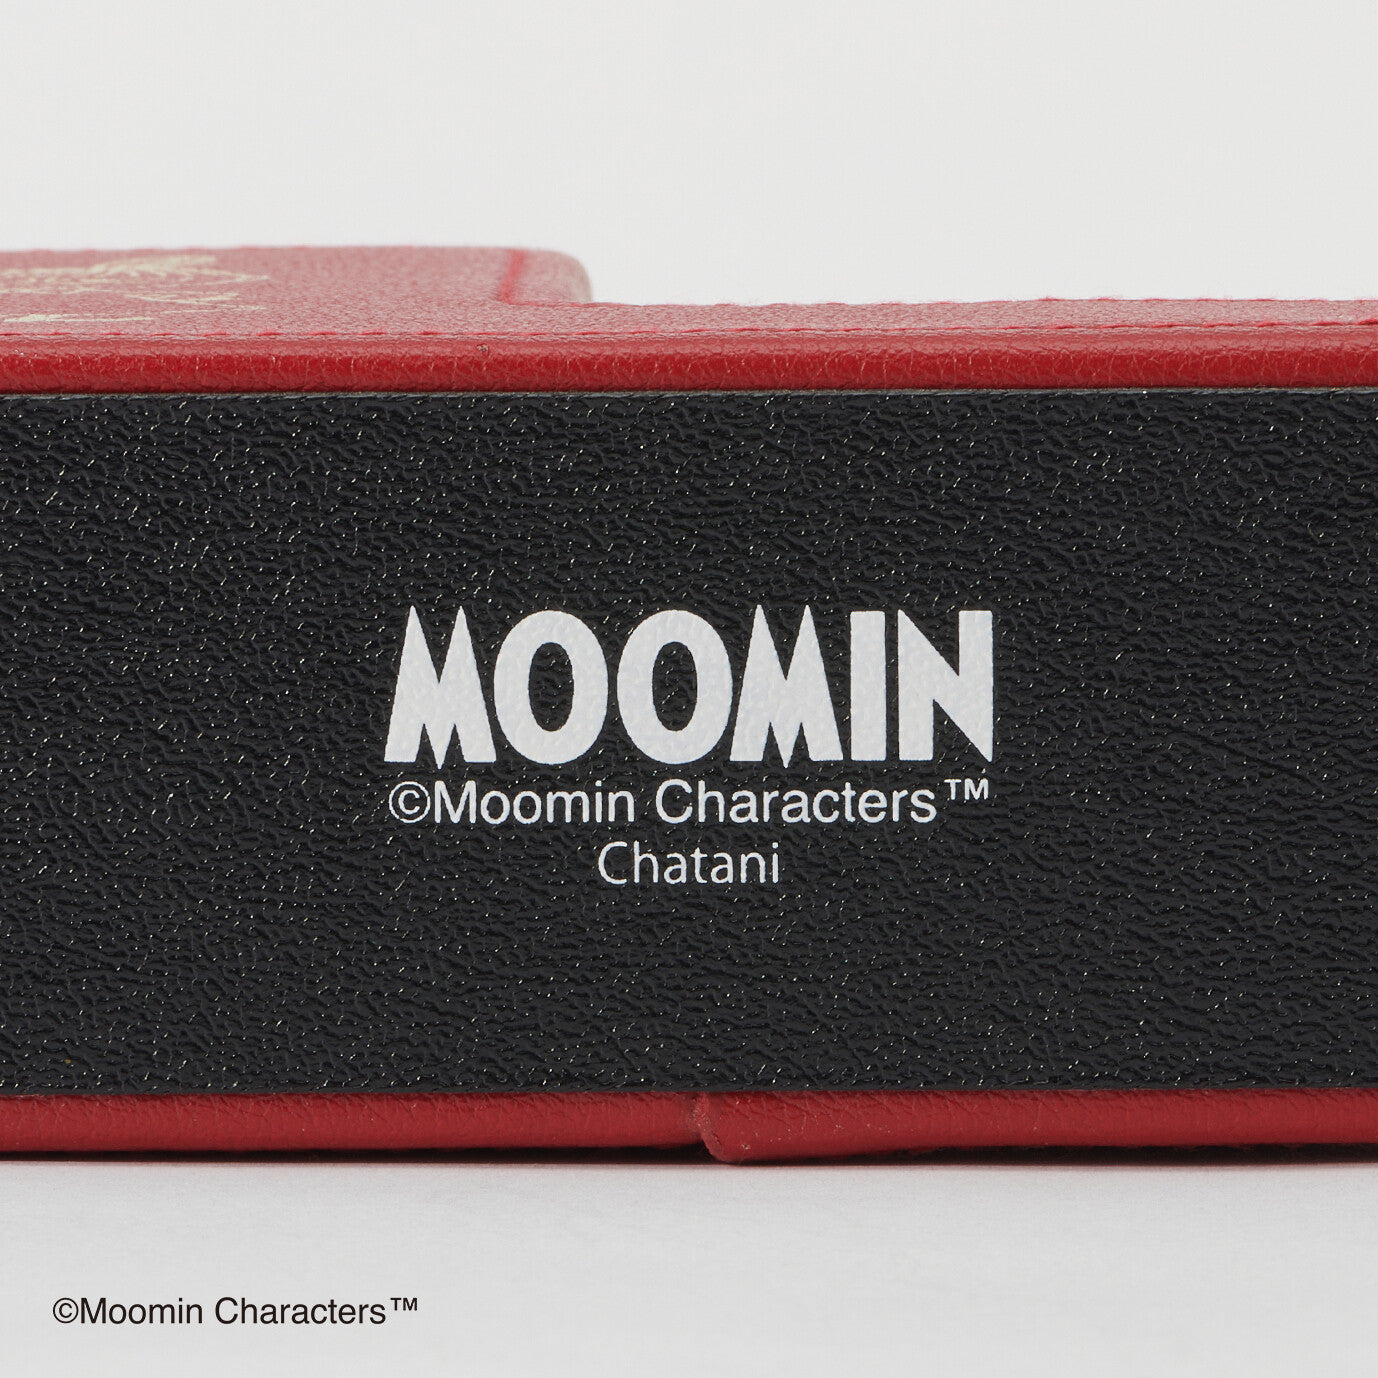  Moomin charactars Multipurpose Phone stand 